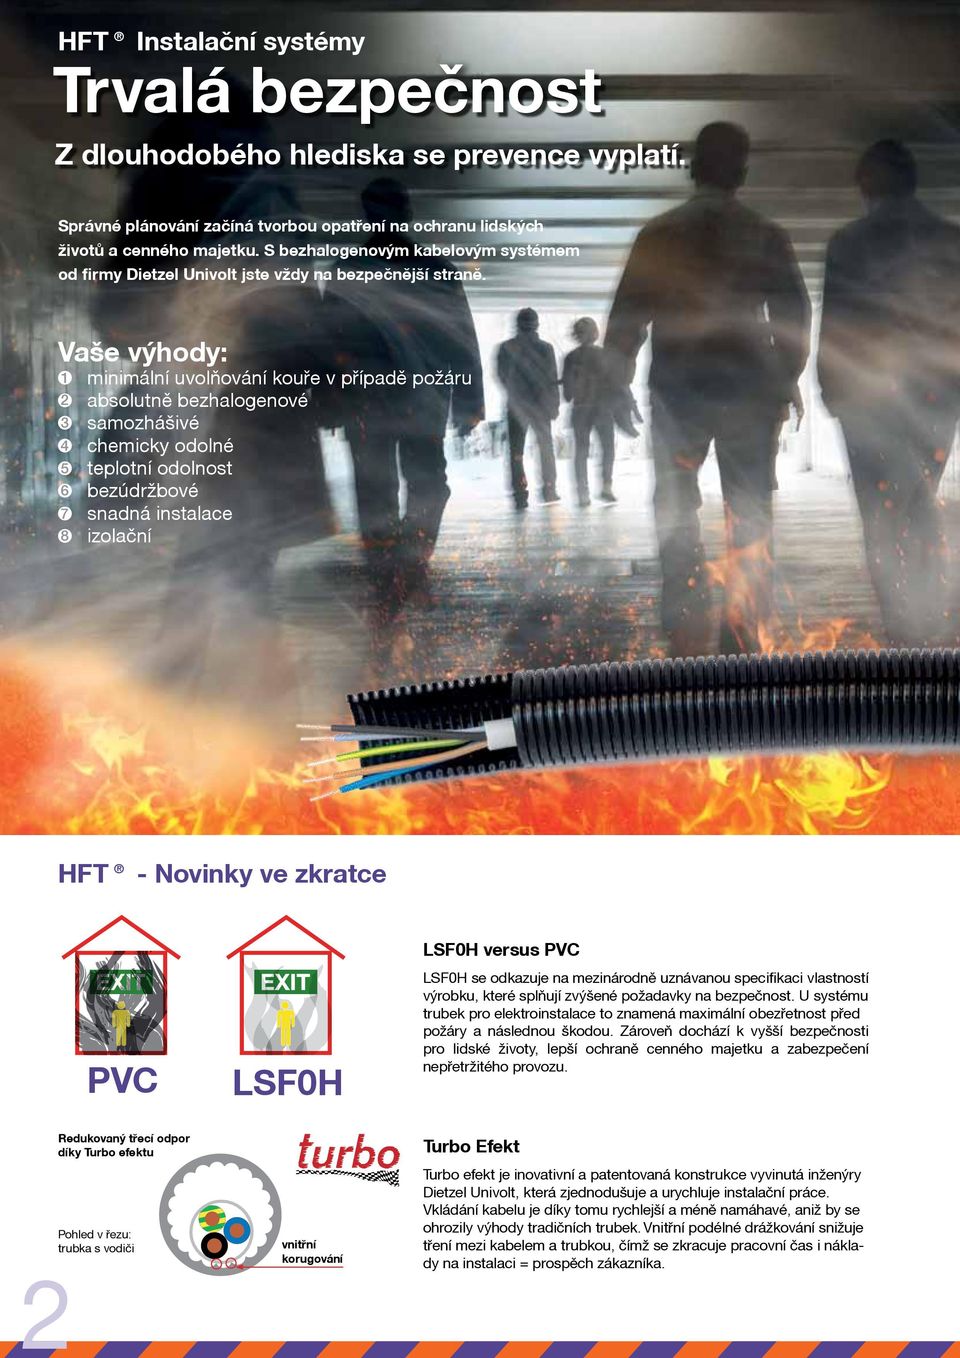 Vaše výhody: 1 2 3 4 5 6 7 8 minimální uvolňování kouře v případě požáru absolutně bezhalogenové samozhášivé chemicky odolné teplotní odolnost bezúdržbové snadná instalace izolační HFT - Novinky ve